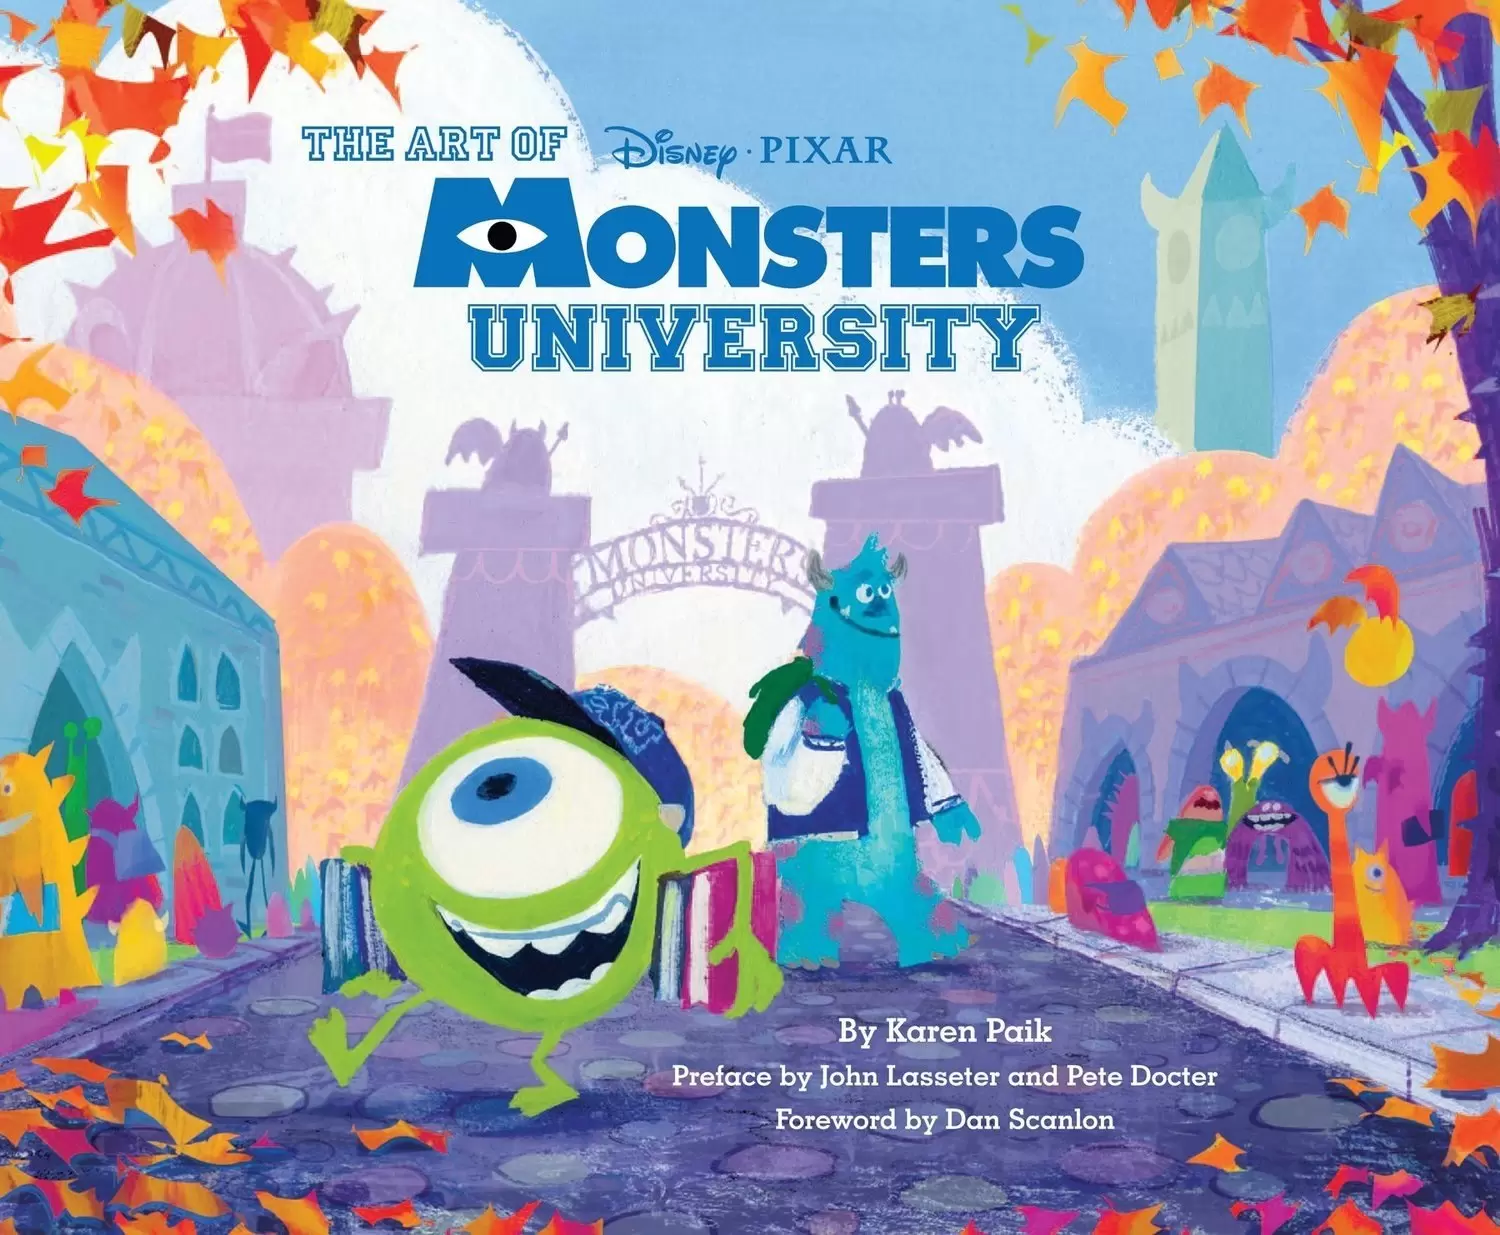 Disney - The Art of Monsters University